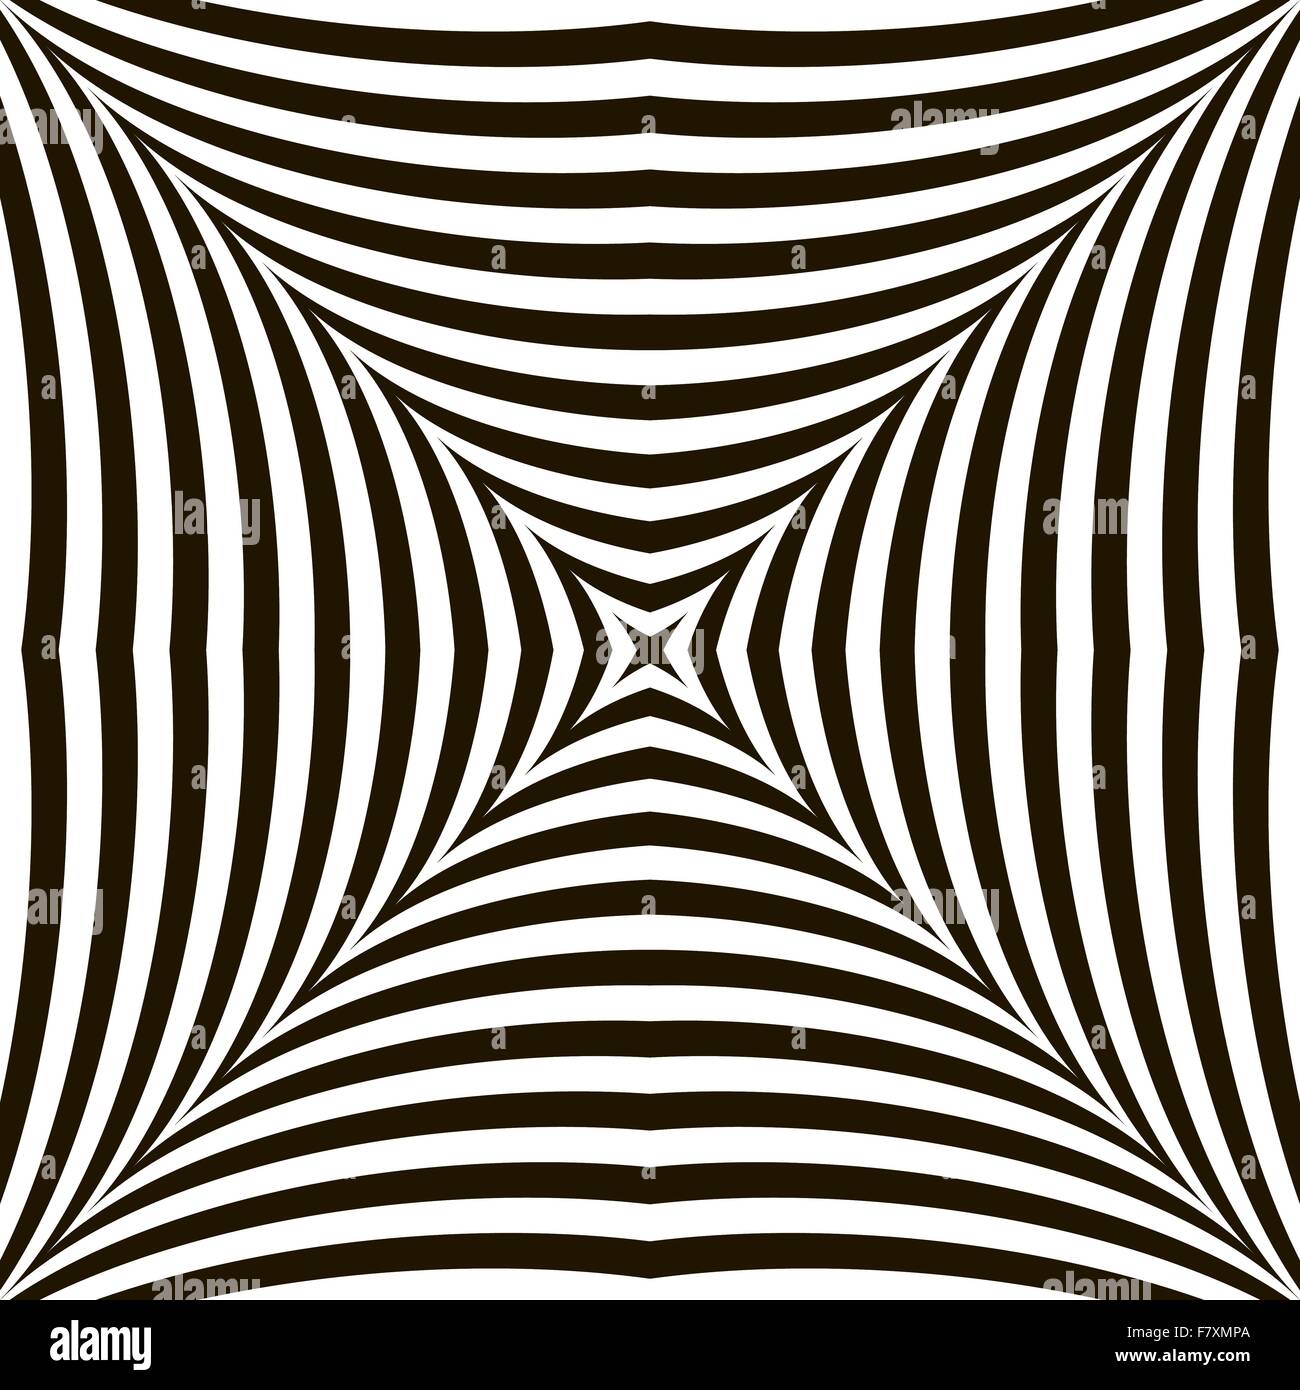 Bianco e nero vettore geometrico scintillante illusione ottica. Moderno effetto di sfarfallio. Op Art Design Illustrazione Vettoriale